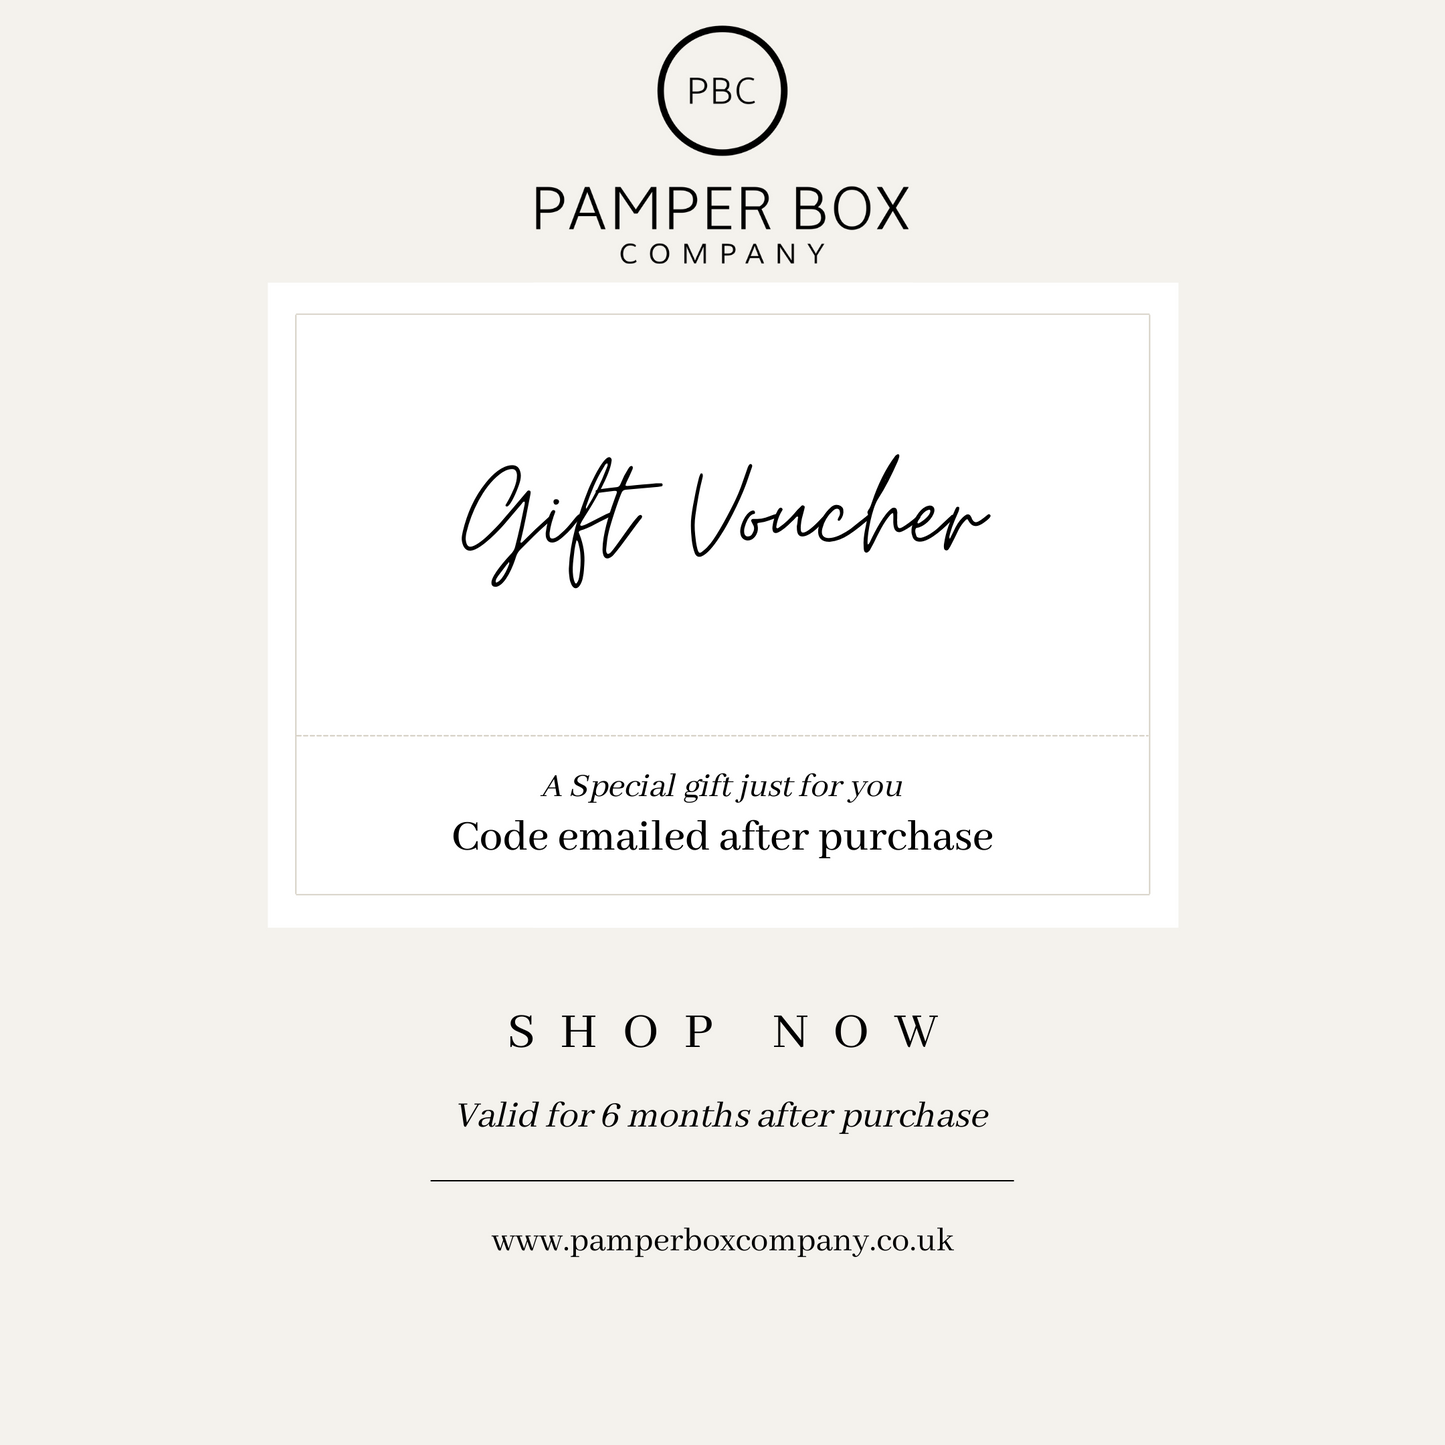 Pamper Box Company E-Gift Voucher